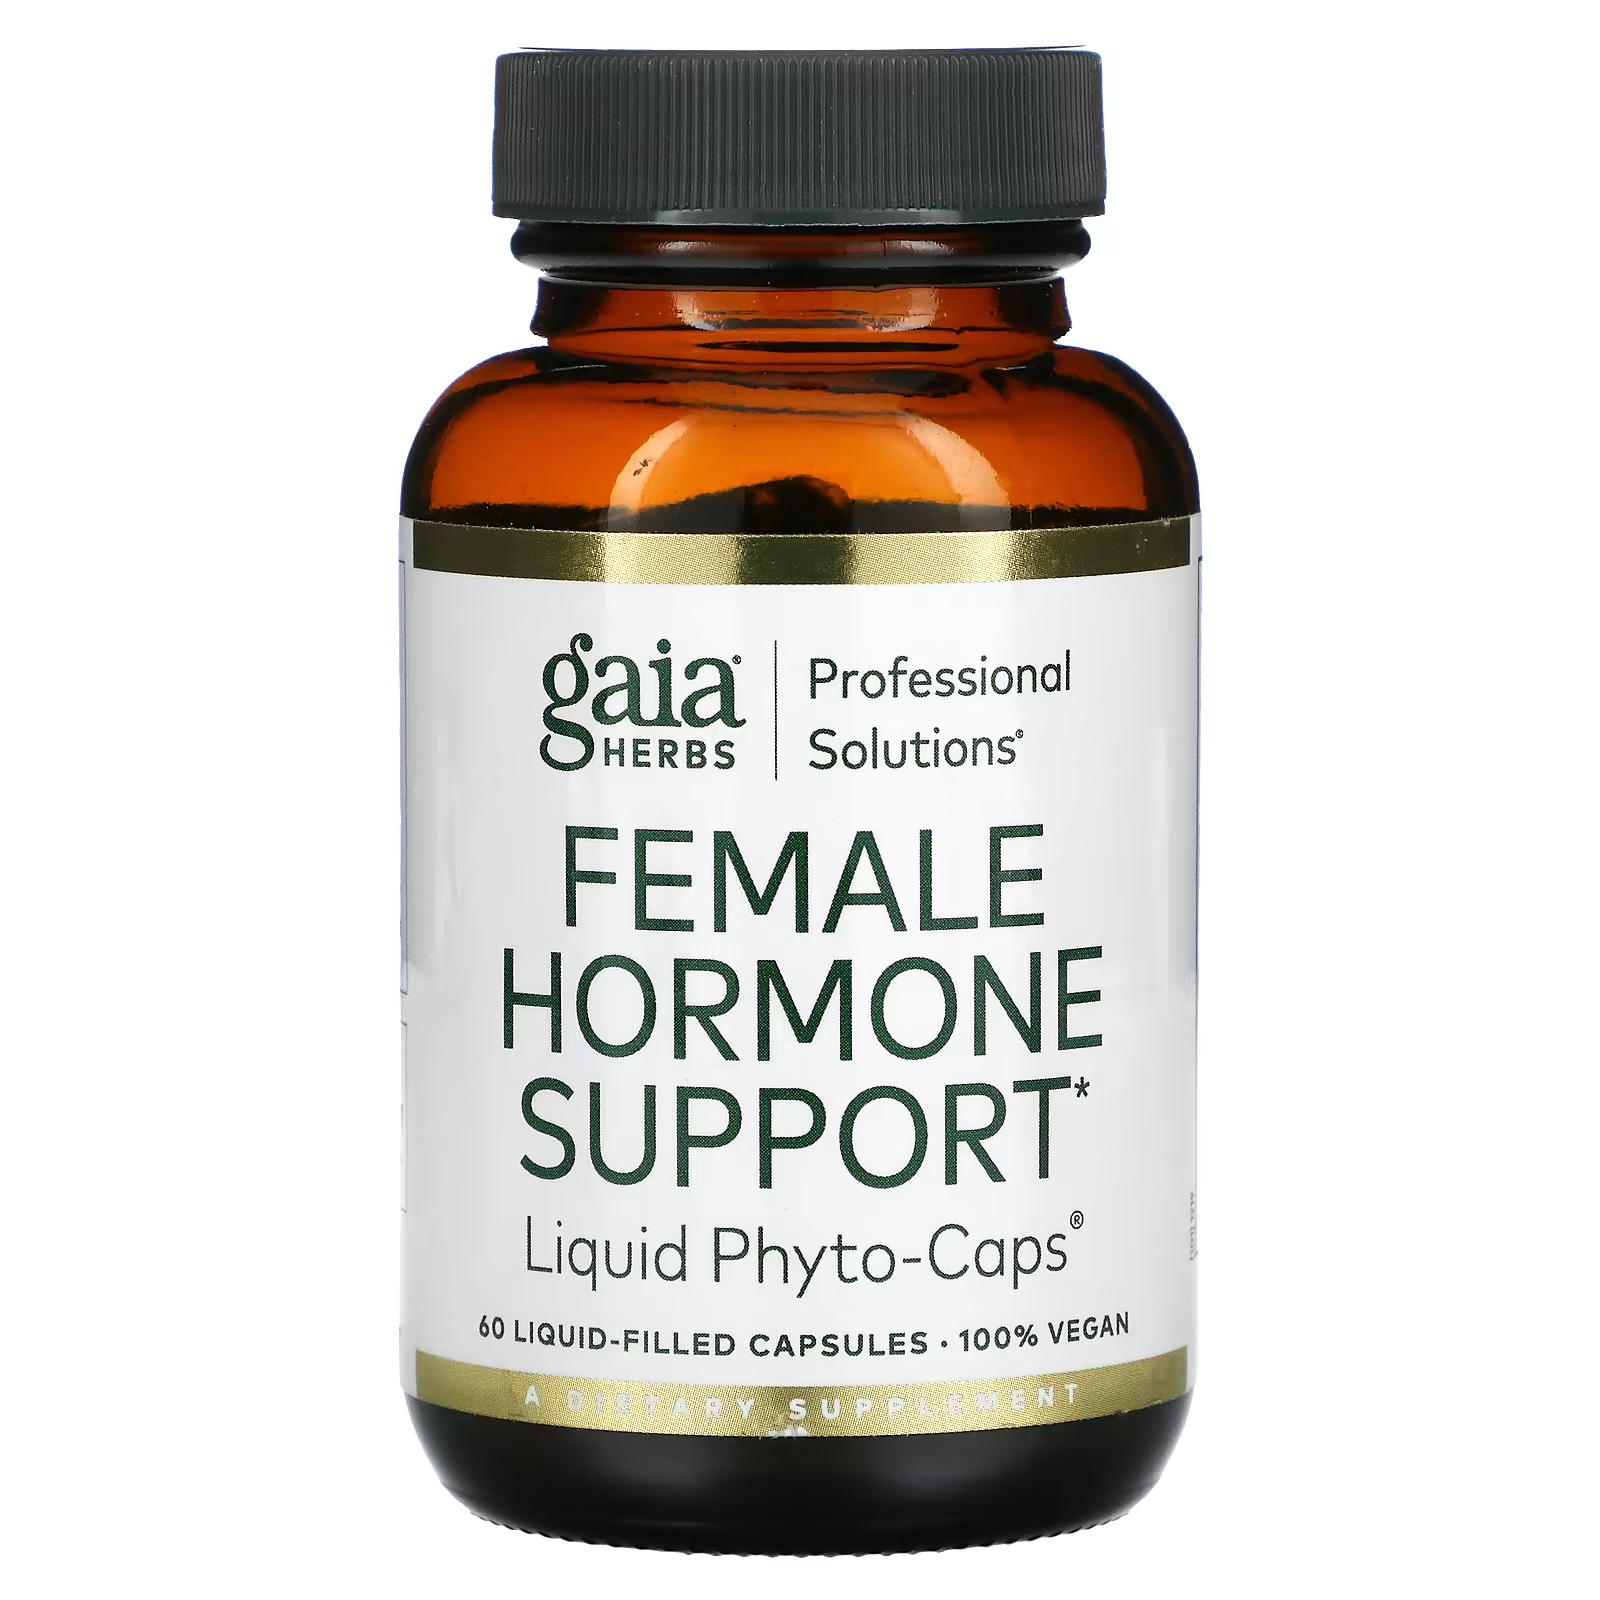 Пищевая добавка Gaia Herbs Professional Solutions поддержка женских гормонов, 60 капсул пищевая добавка gaia herbs adrenal health 60 капсул